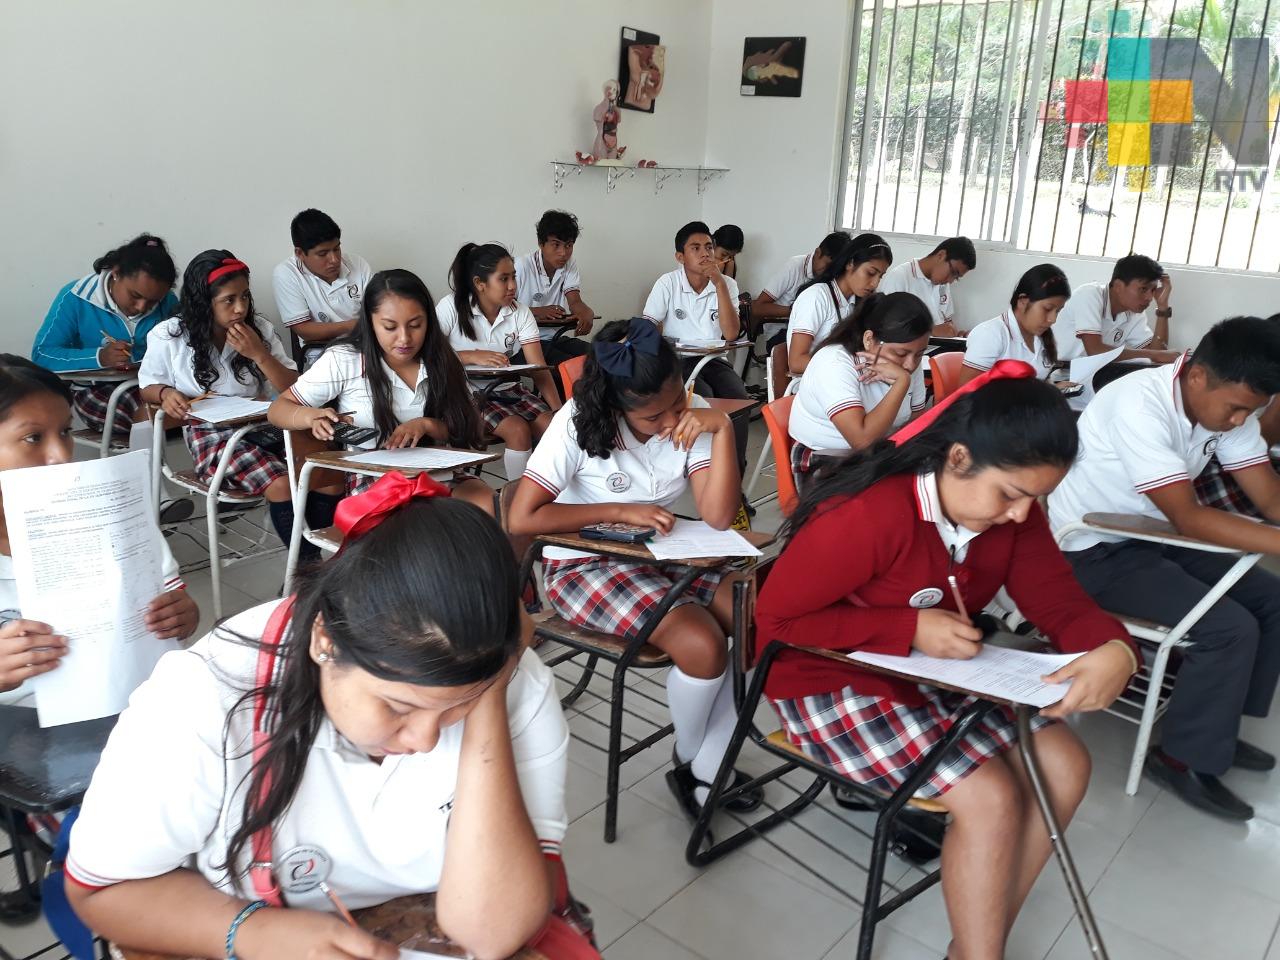 Aumenta matrícula en sistema educativo de Telebachillerato en zona Tuxpan